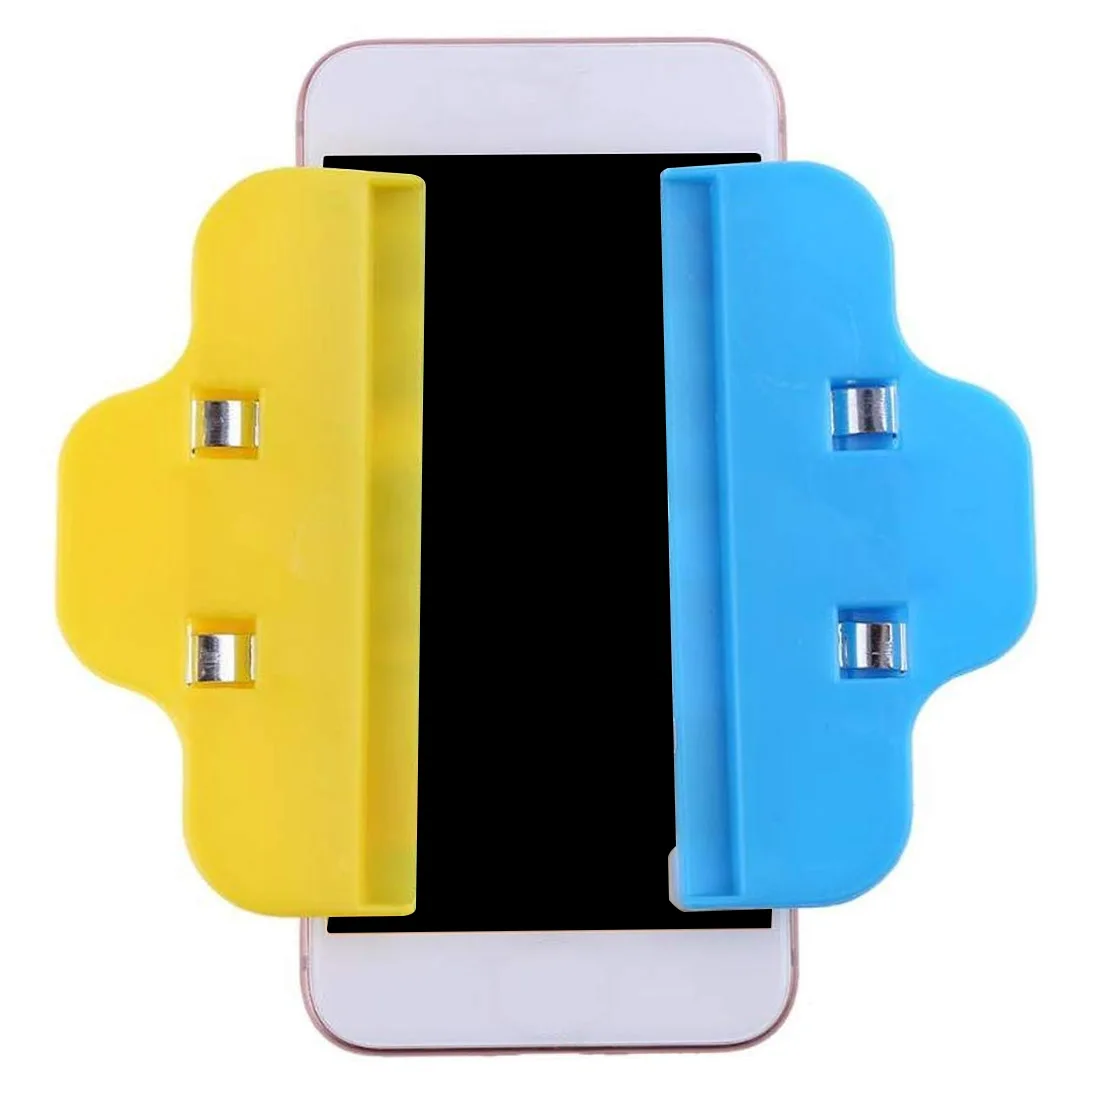 4 шт. Инструменты для ремонта мобильных телефонов пластиковое зажимное приспособление зажим для Iphone/samsung/iPad/для планшетов, lcd-экран Инструменты для ремонта